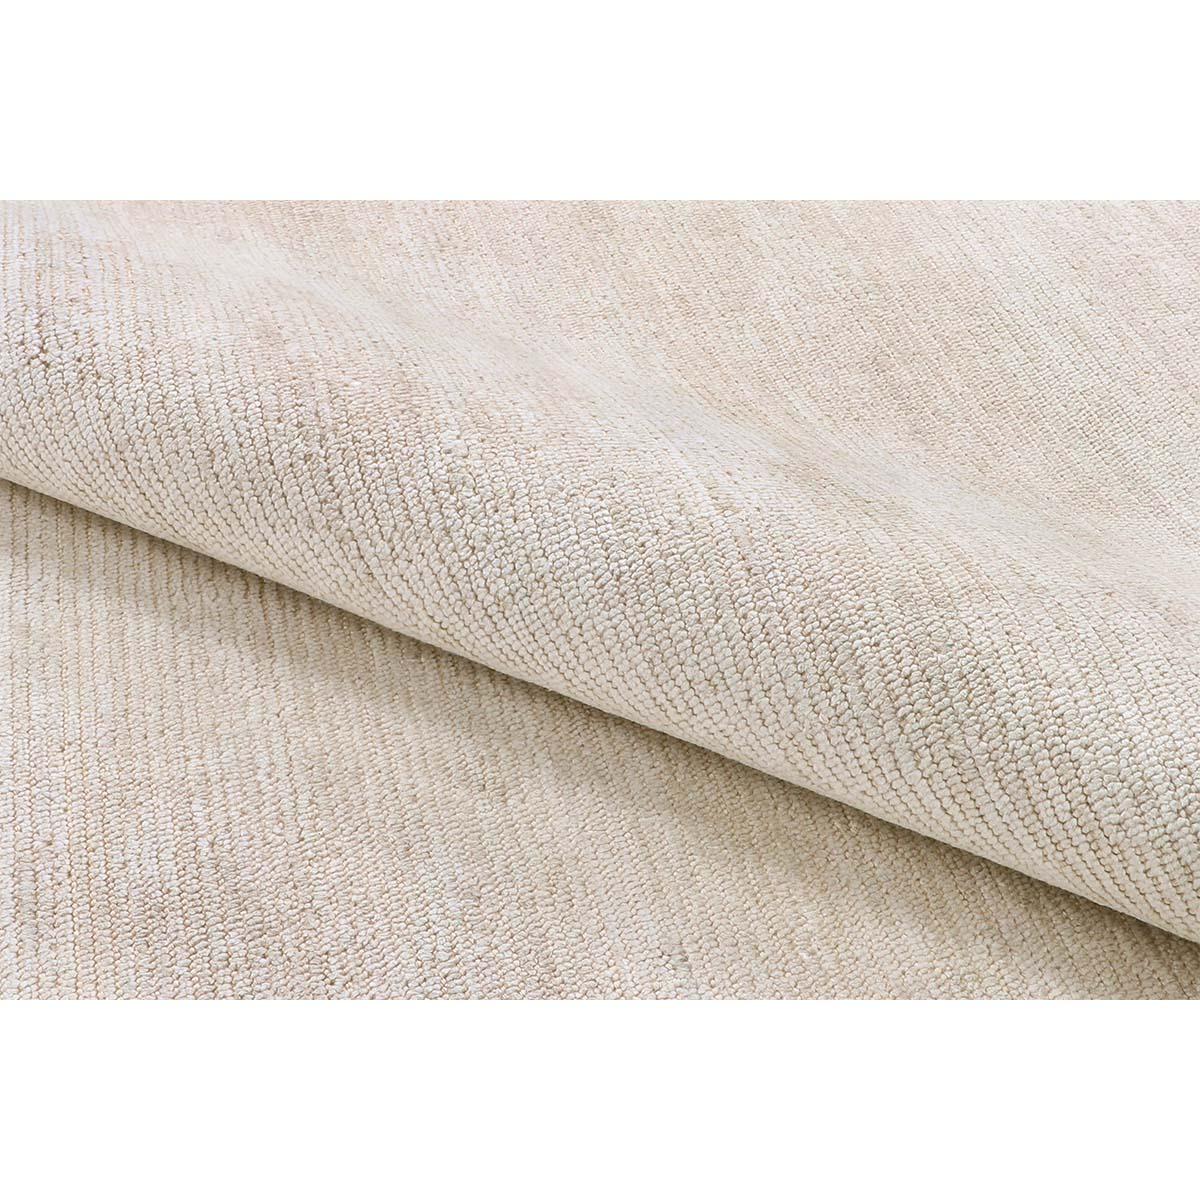 La texture viscose lustrée de ce tapis crème tissé à la main offre une surface aussi douce à la main que riche à l'œil. L'élégance discrète des tons vrais et la construction robuste complètent ce tableau de luxe et de durabilité. Mesures : 8' x